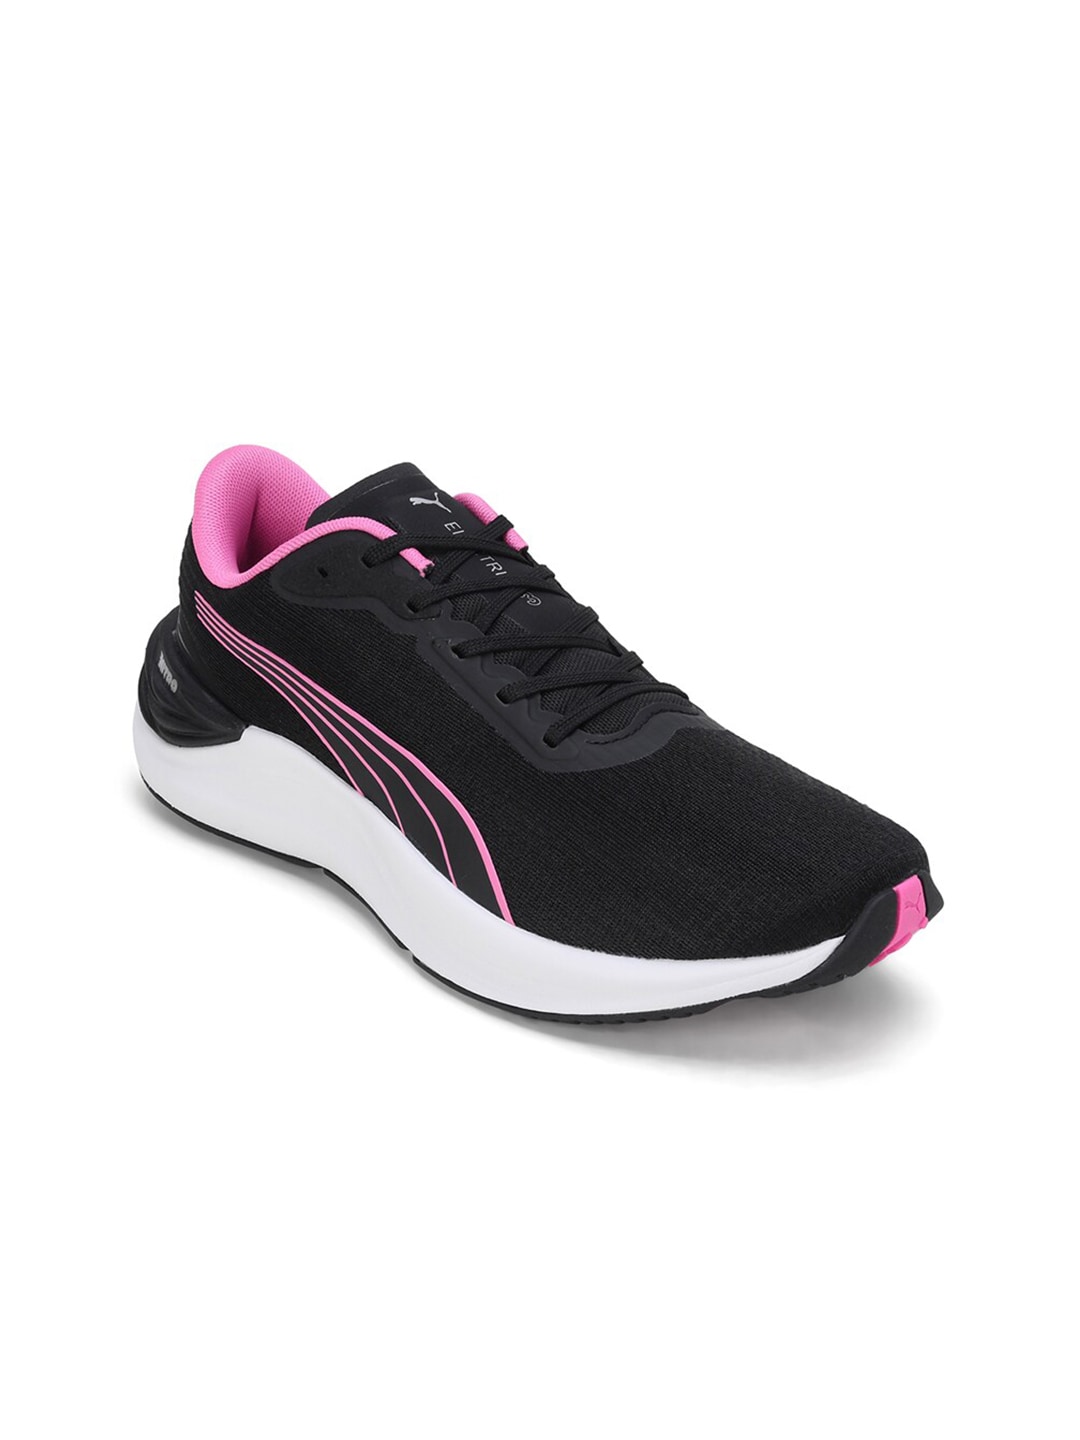 Puma Women Electrify NITRO 3 Running Shoes